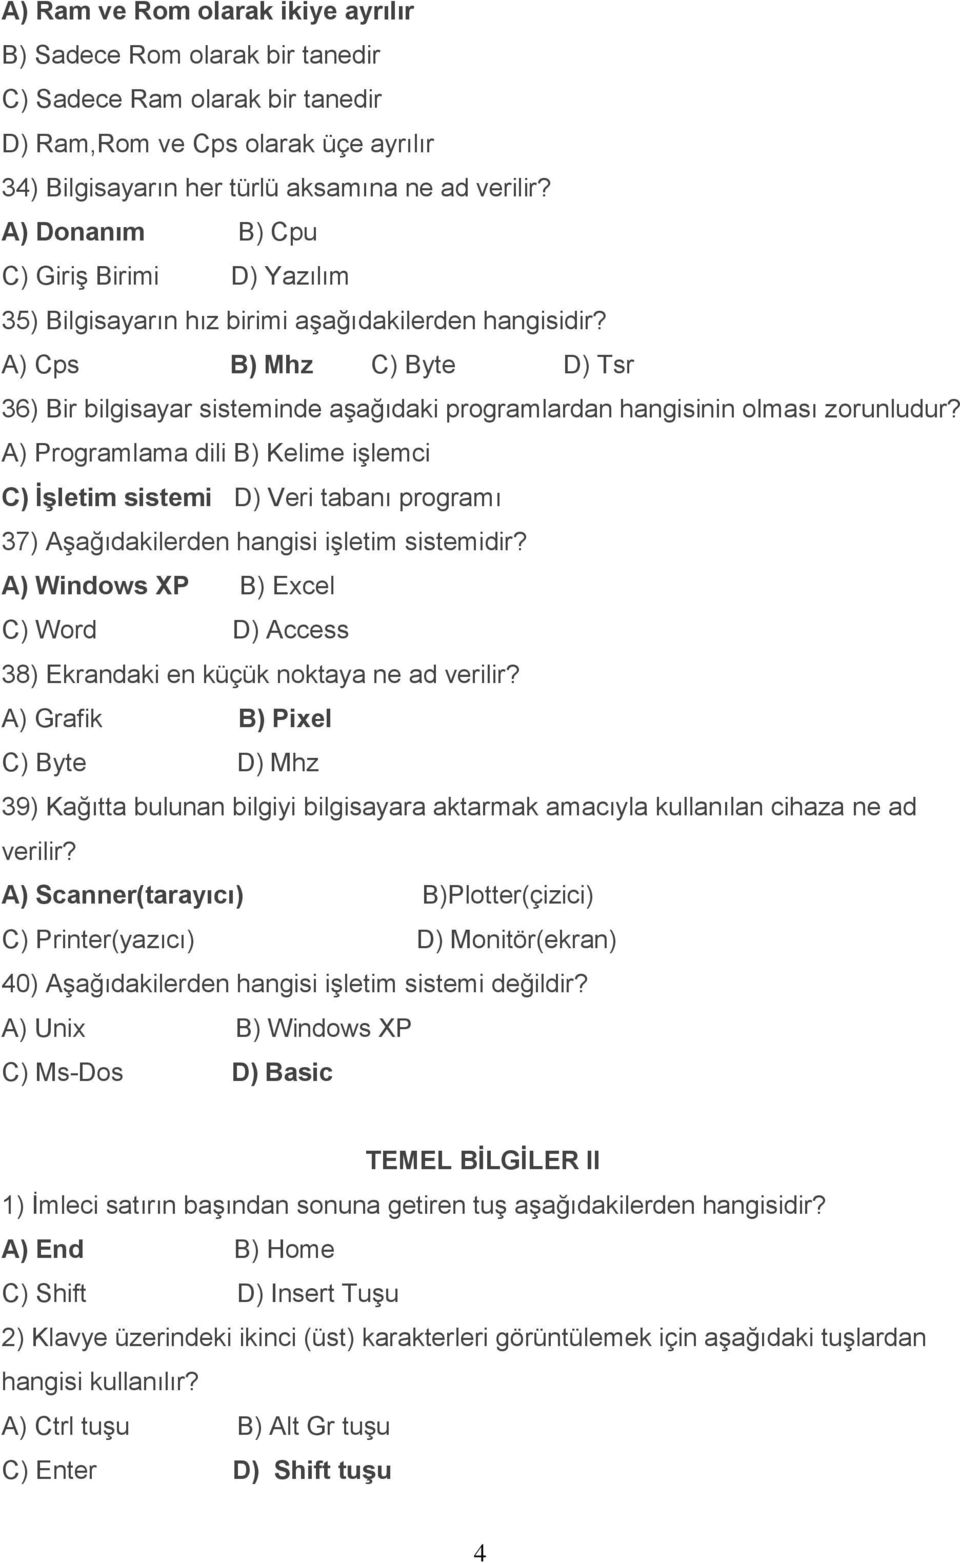 A) Cps B) Mhz C) Byte D) Tsr 36) Bir bilgisayar sisteminde aşağıdaki programlardan hangisinin olması zorunludur?